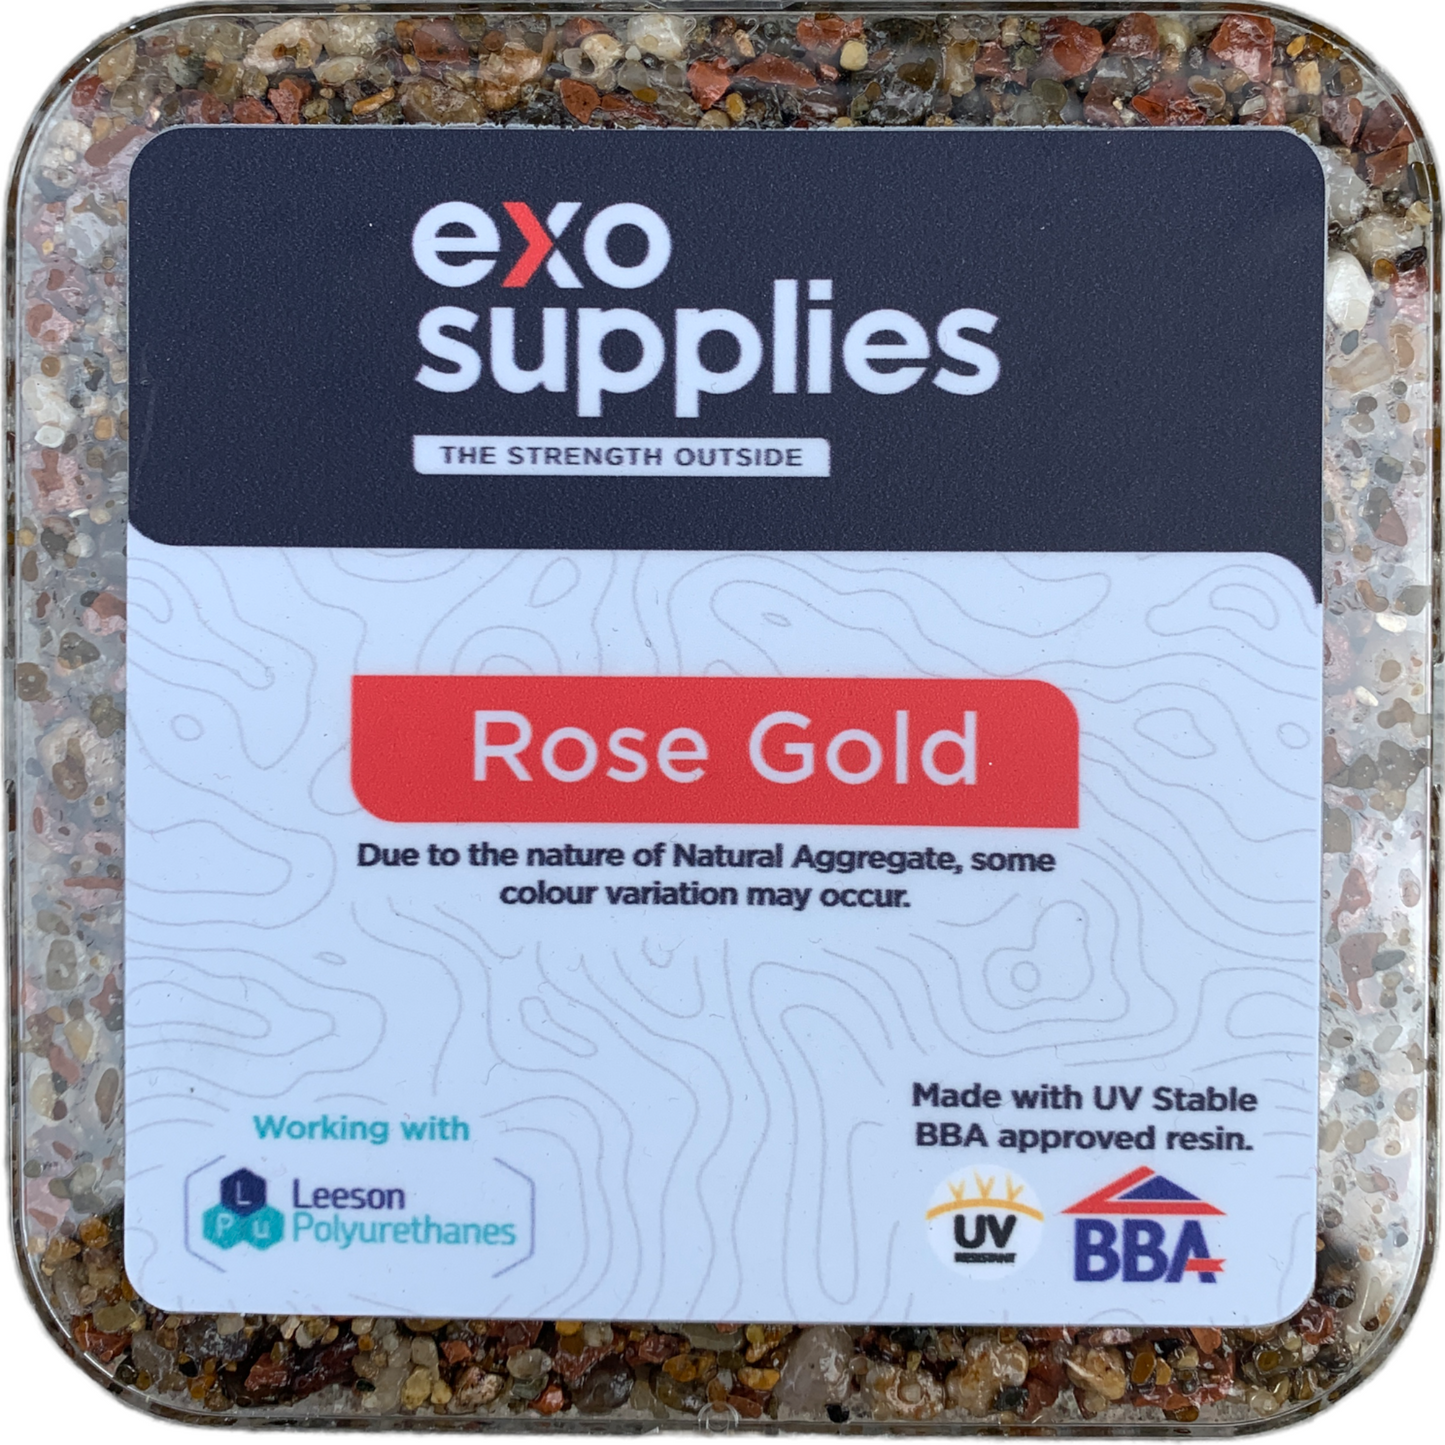 Exo Rose Garden with BBA 7.5kg UV stable Resin